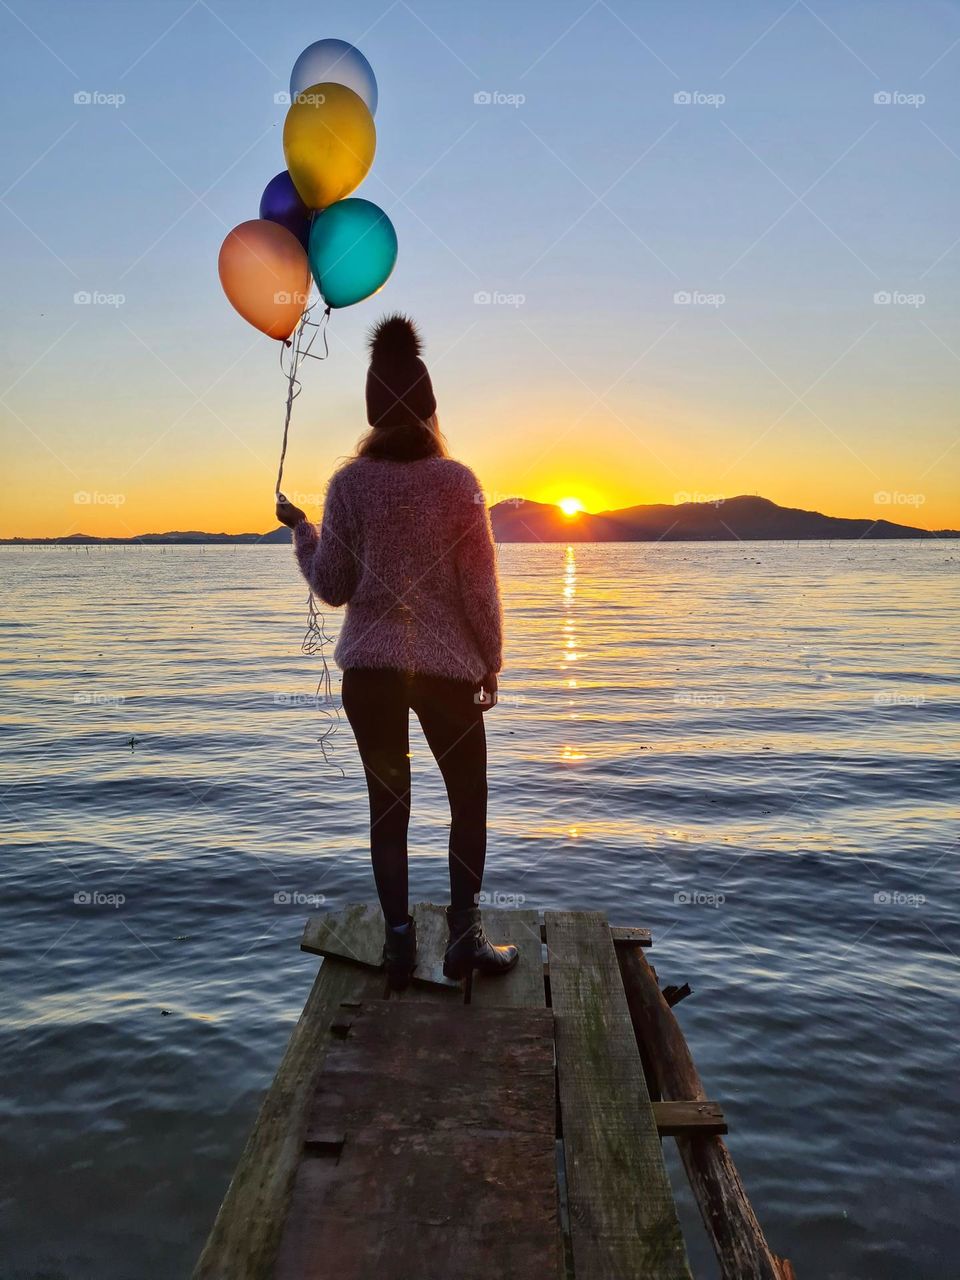 lake and baloons